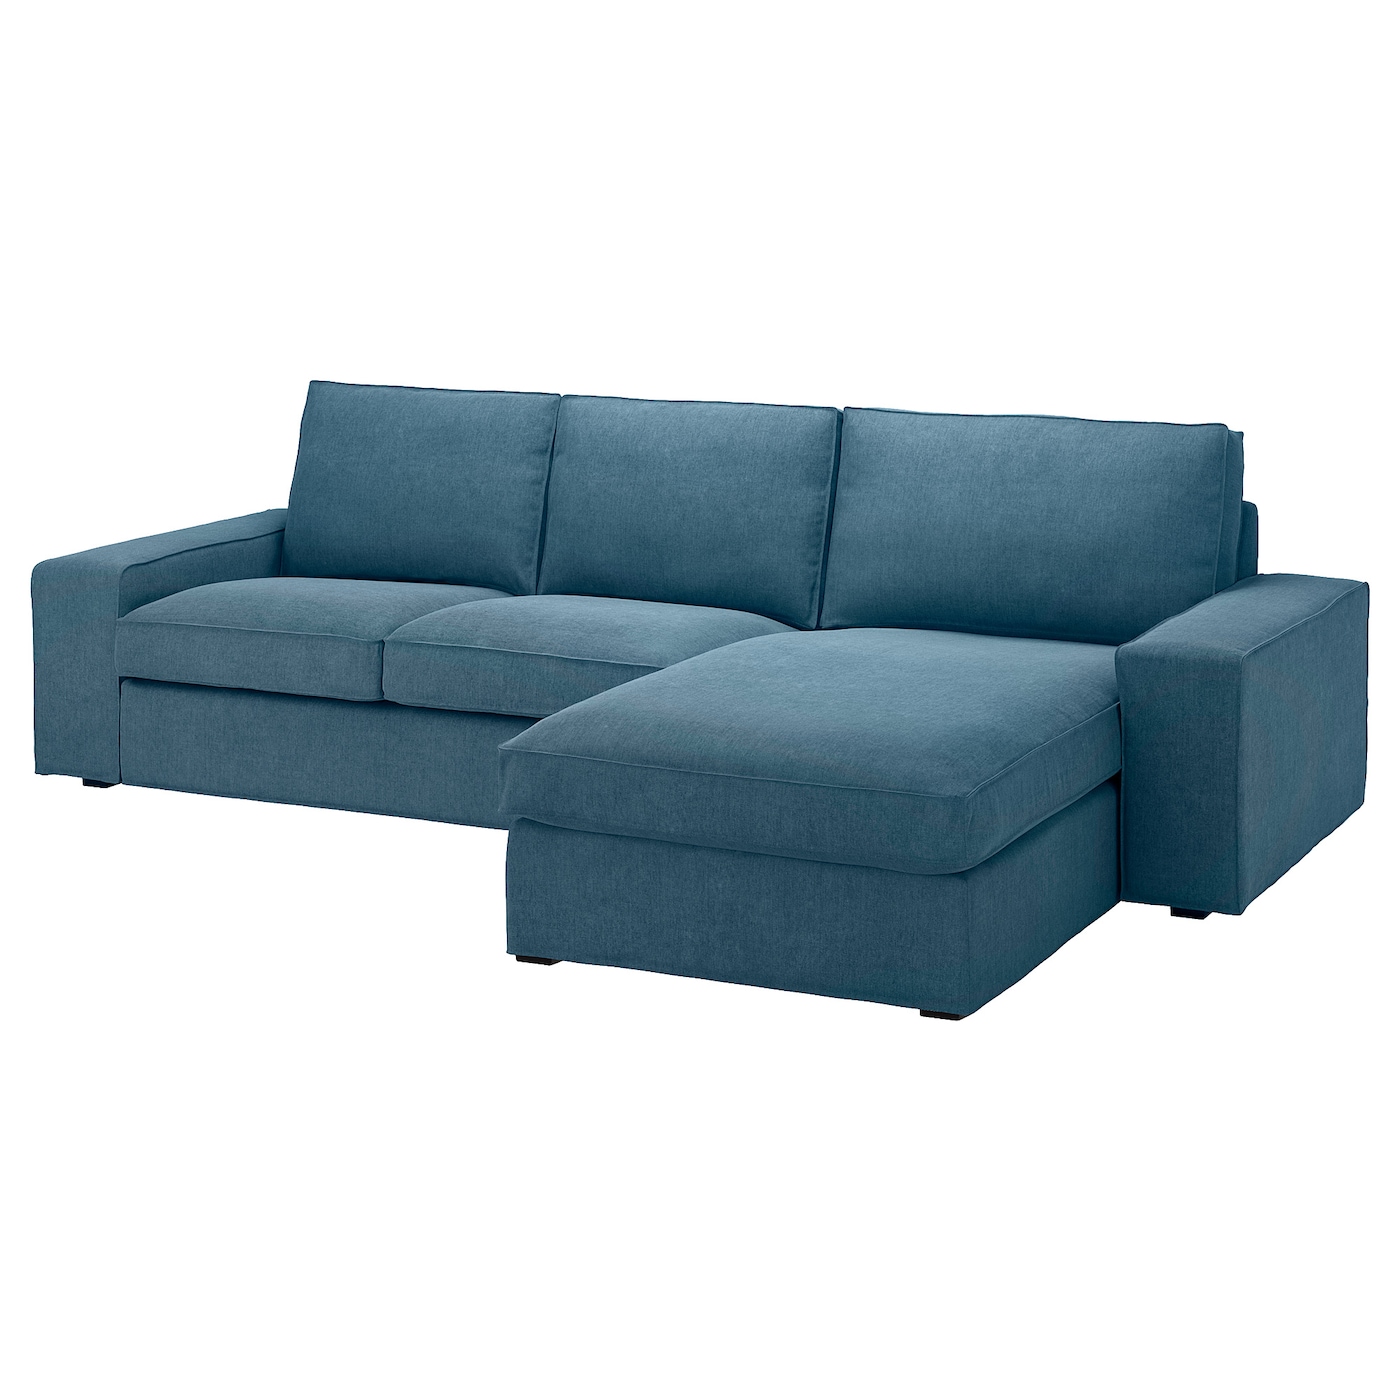 KIVIK 3-seat sofa with chaise longue Tallmyra blue - IKEA